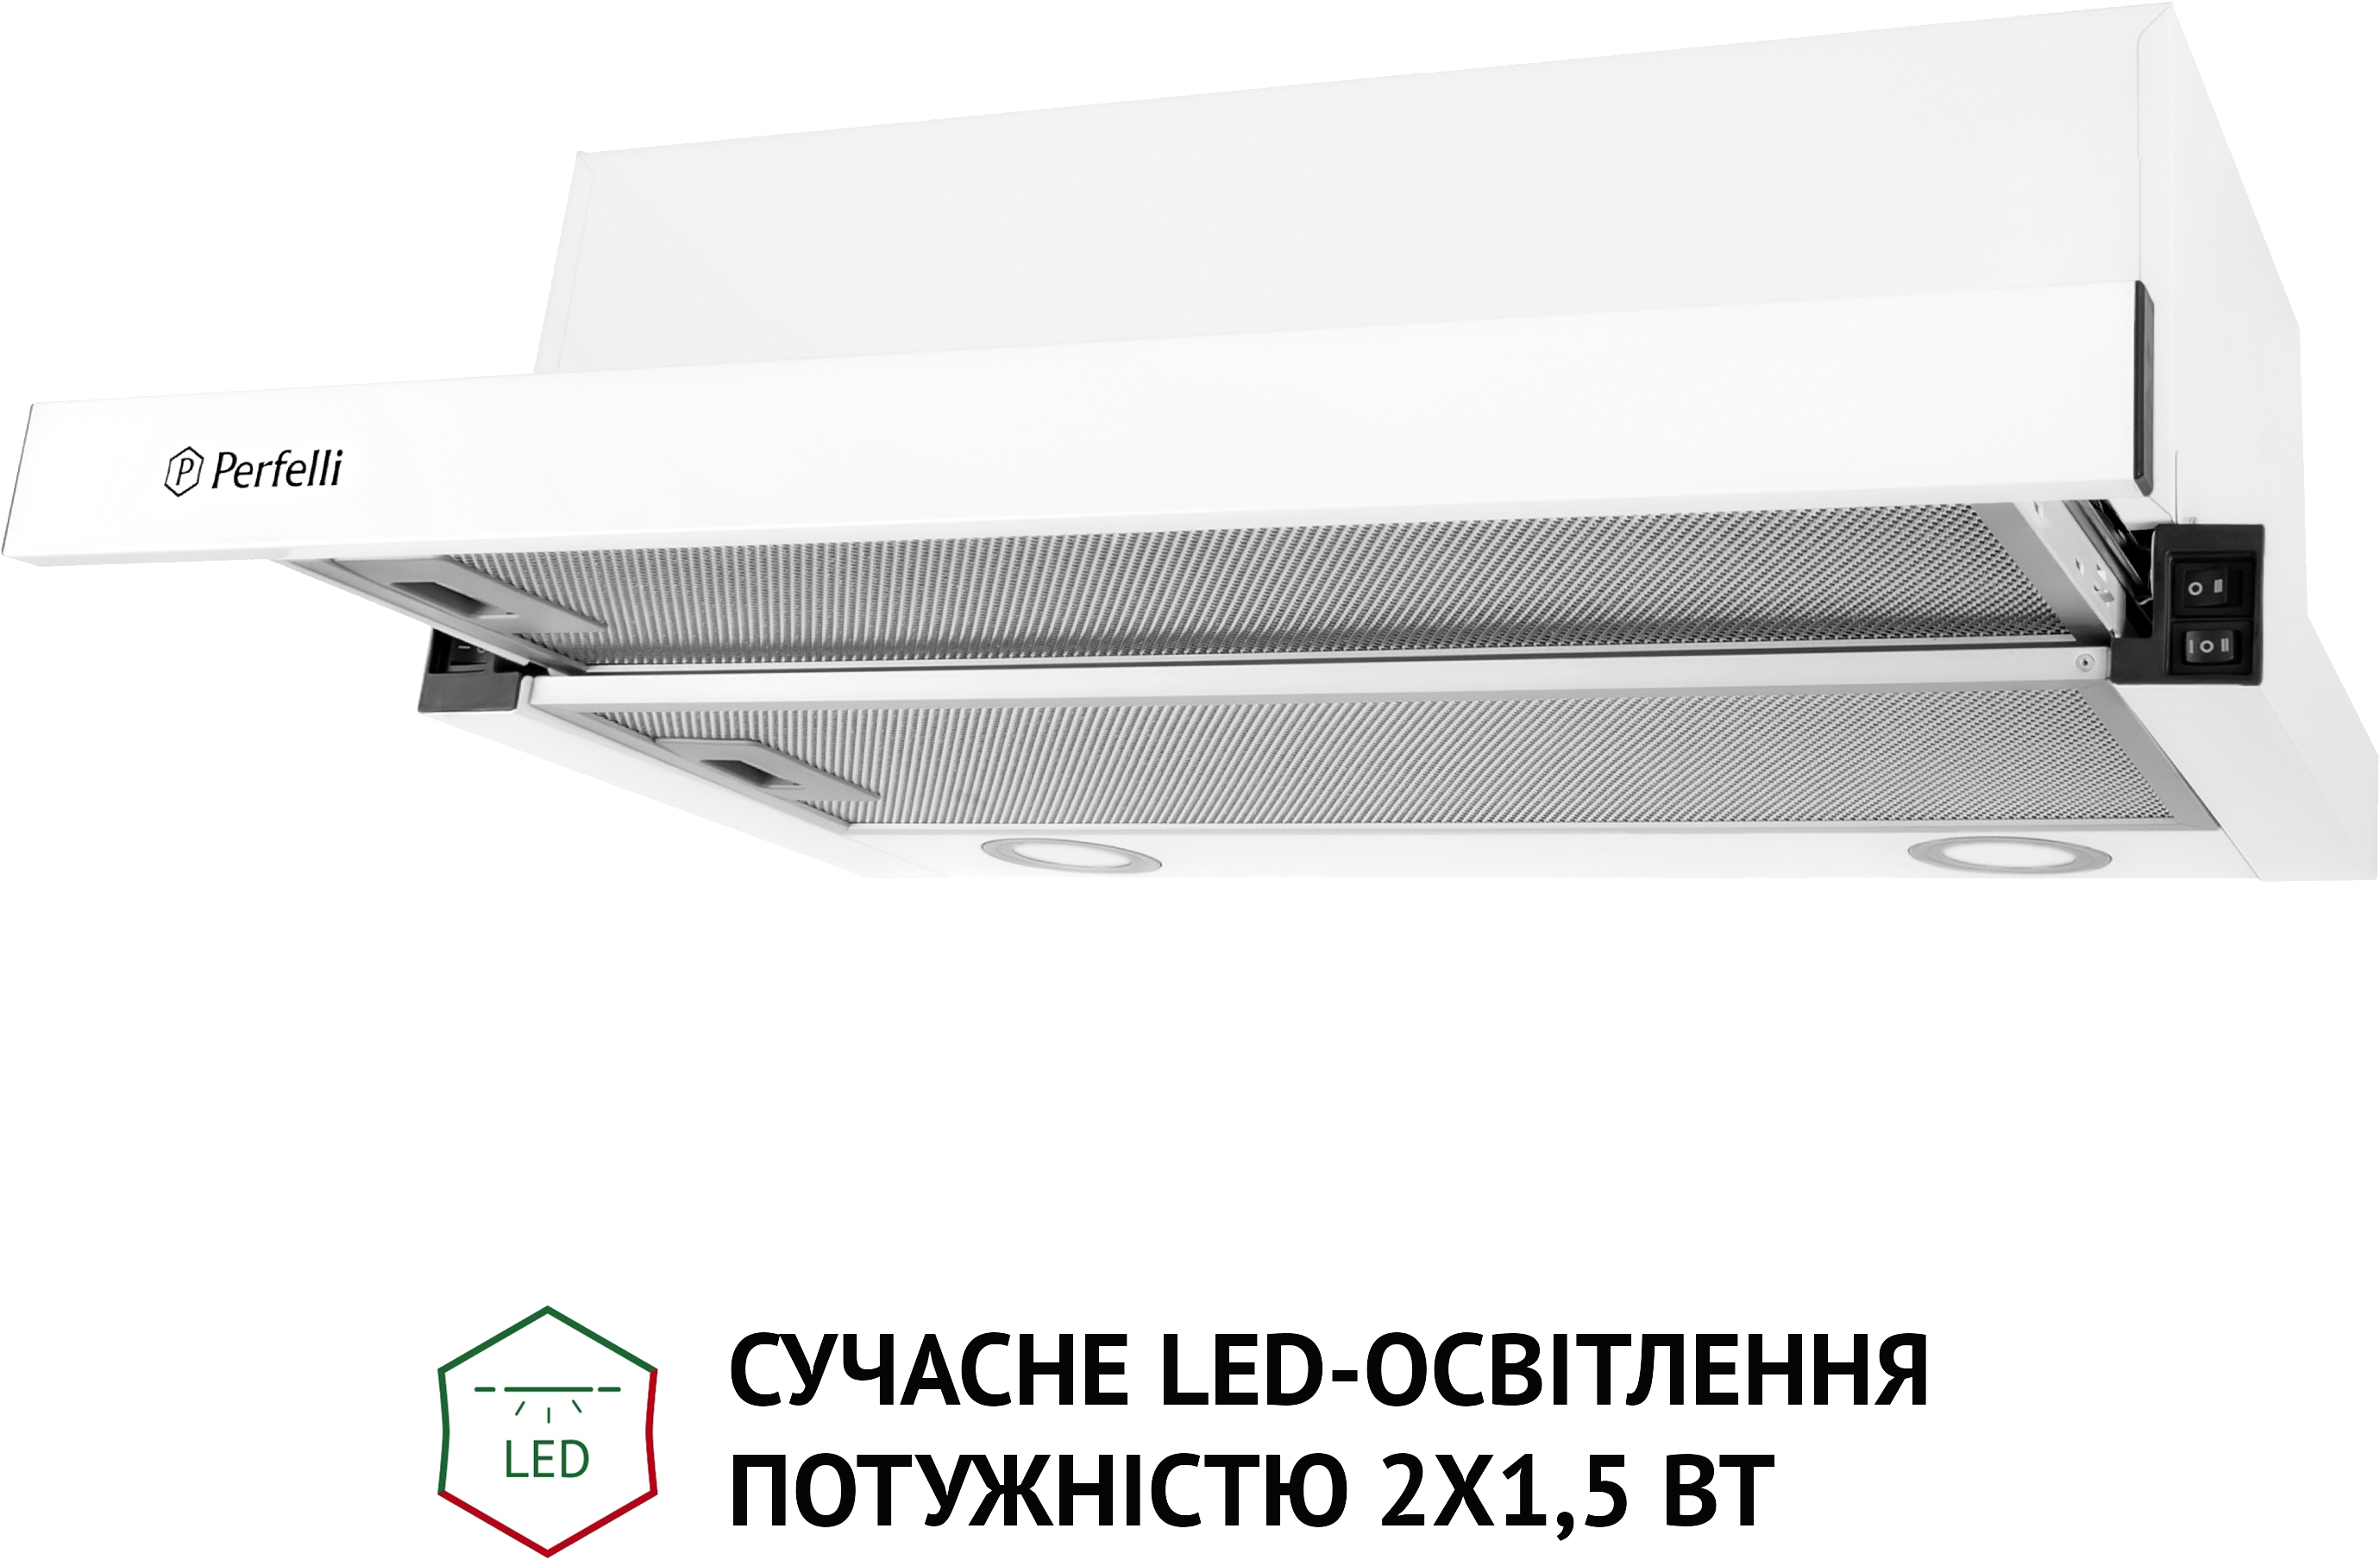 продаём Perfelli TL 5212 WH 700 LED в Украине - фото 4